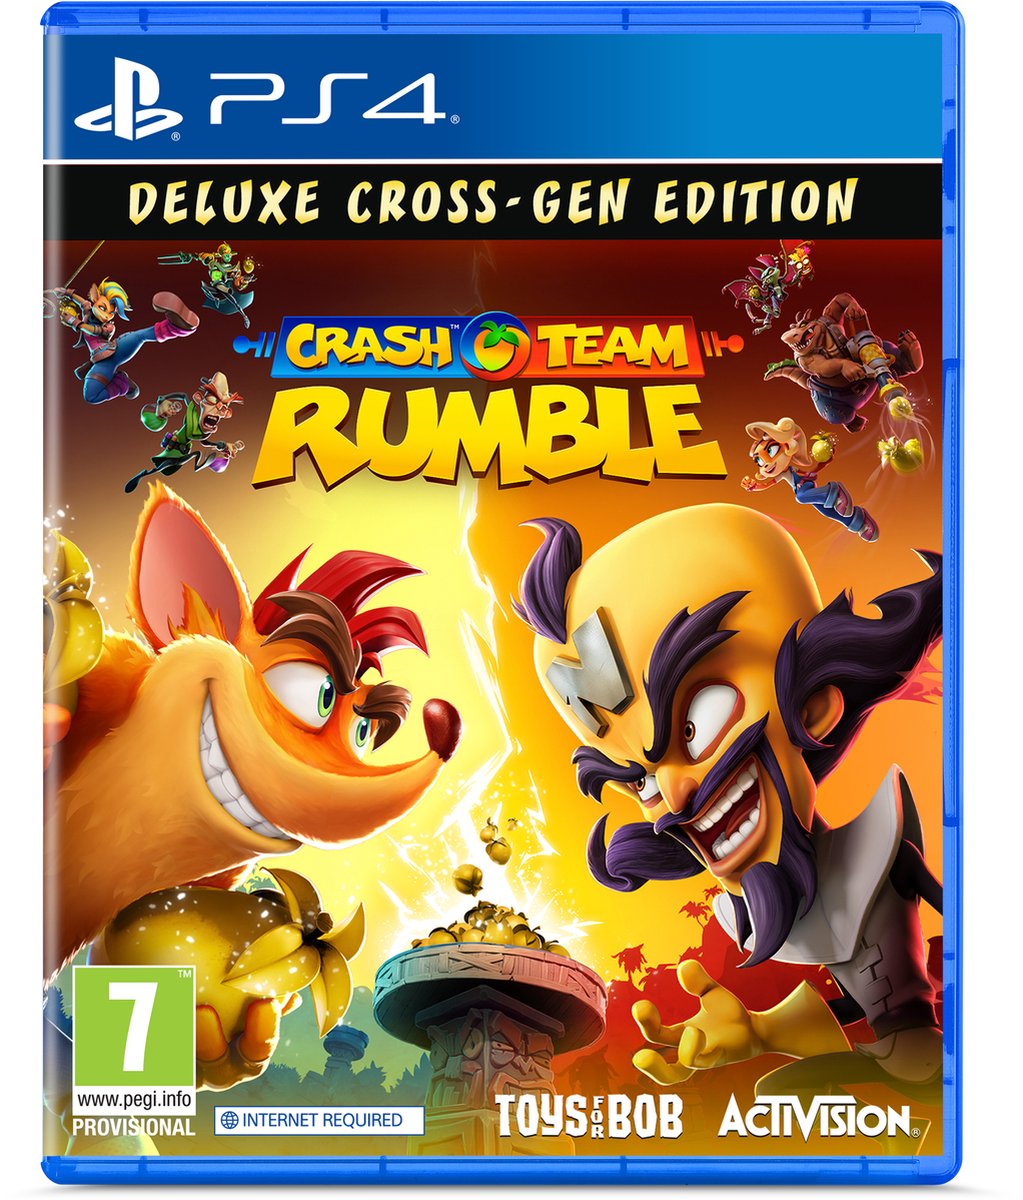 Crash Team Rumble Deluxe - PS4 - Activision Blizzard Entertainment